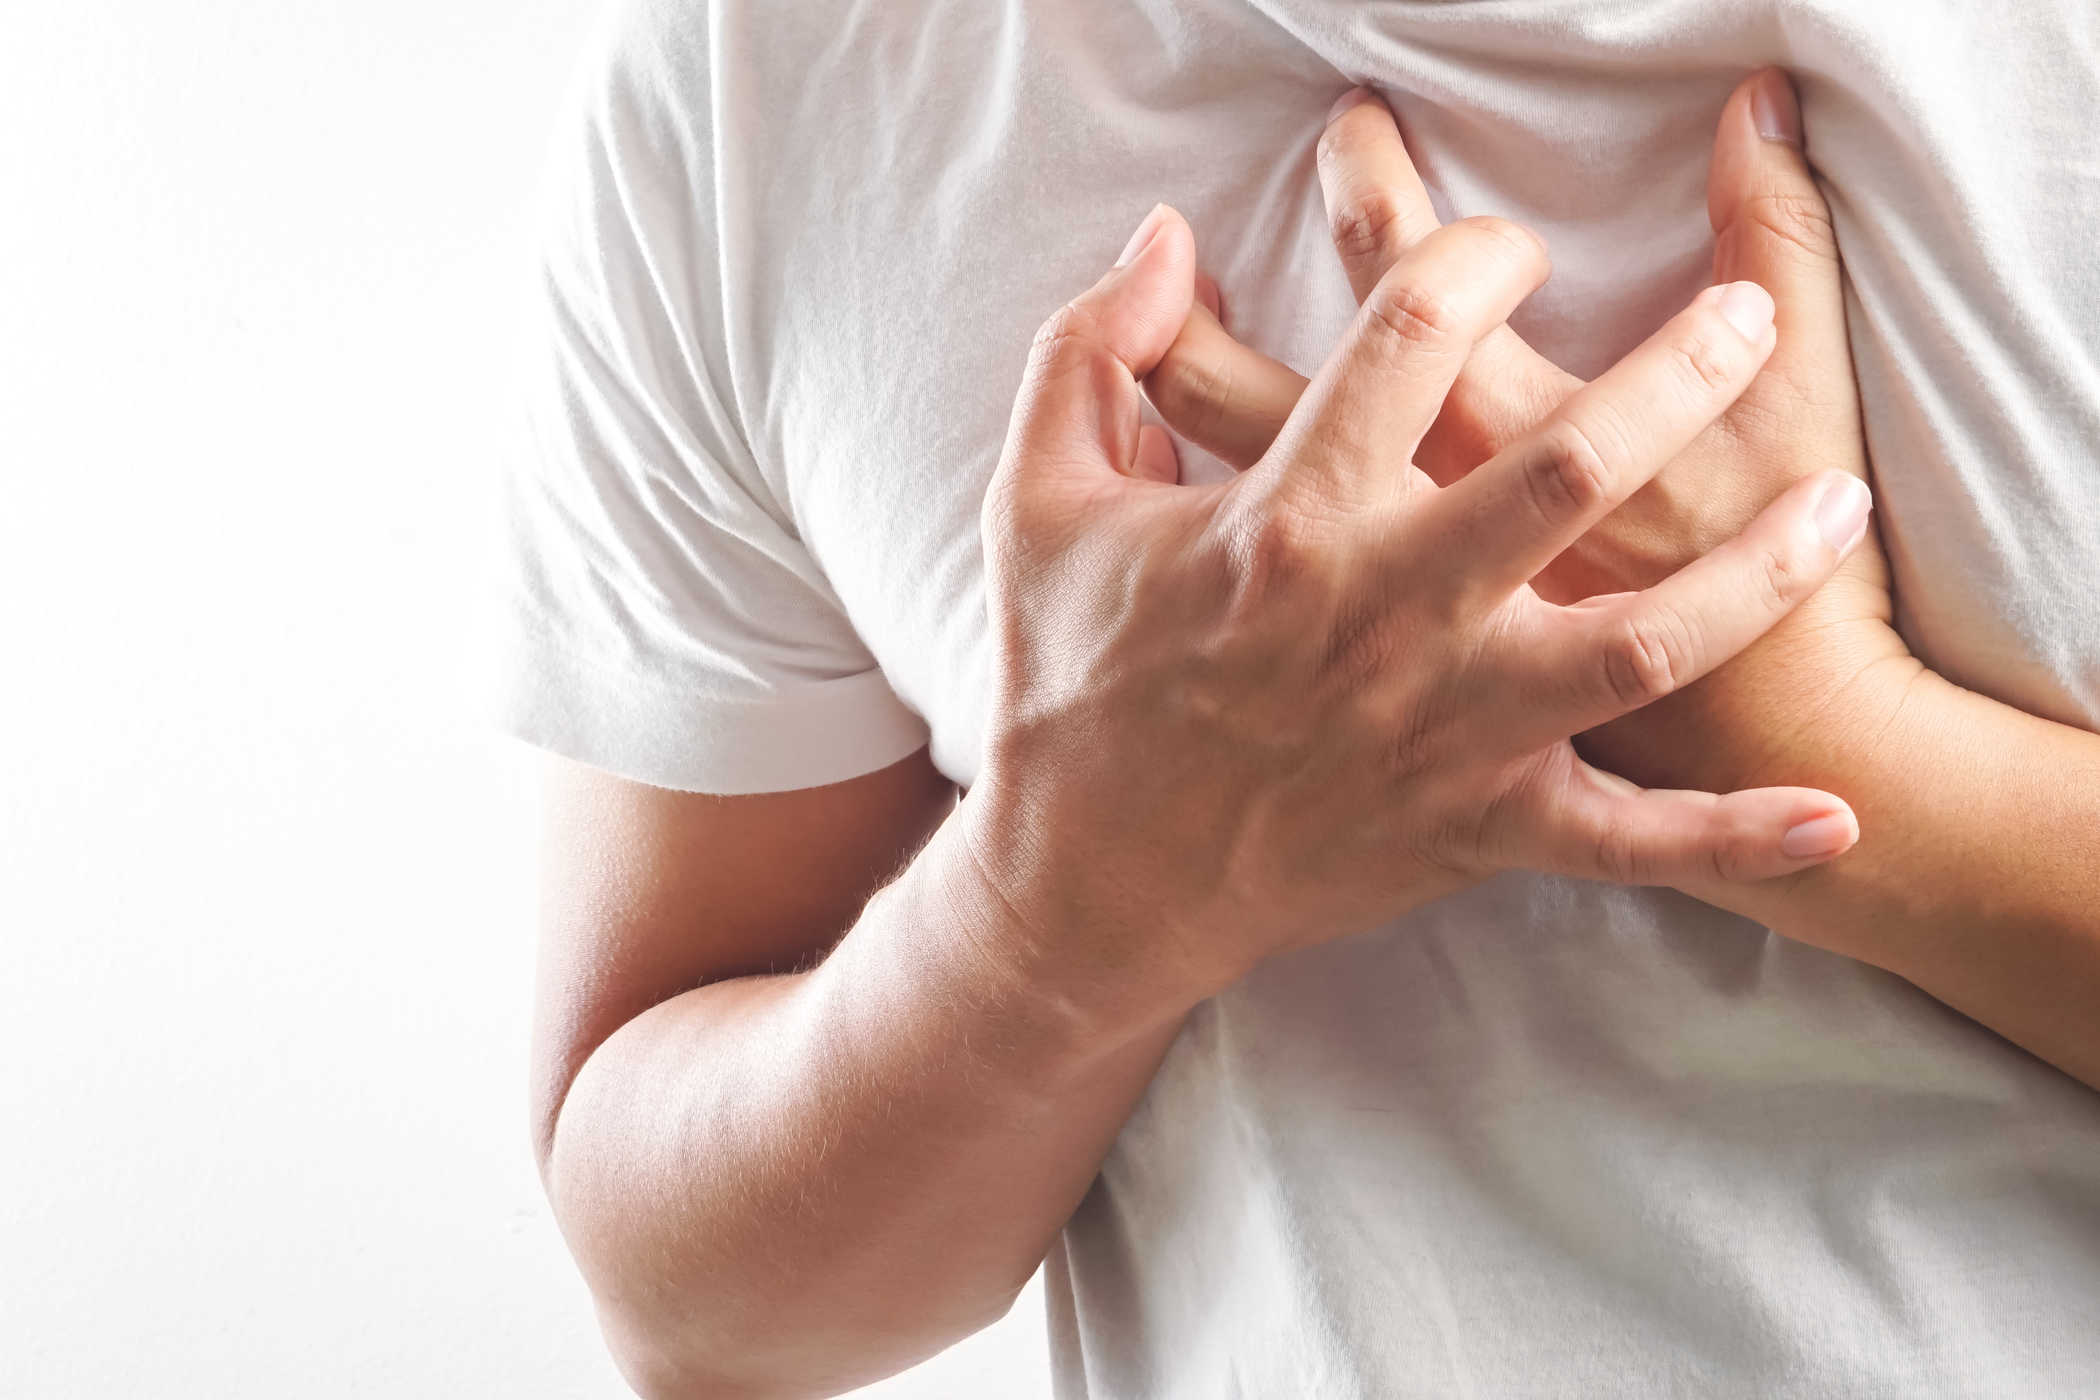   Bị đau ngực là bệnh gì và có nguy hiểm không?  